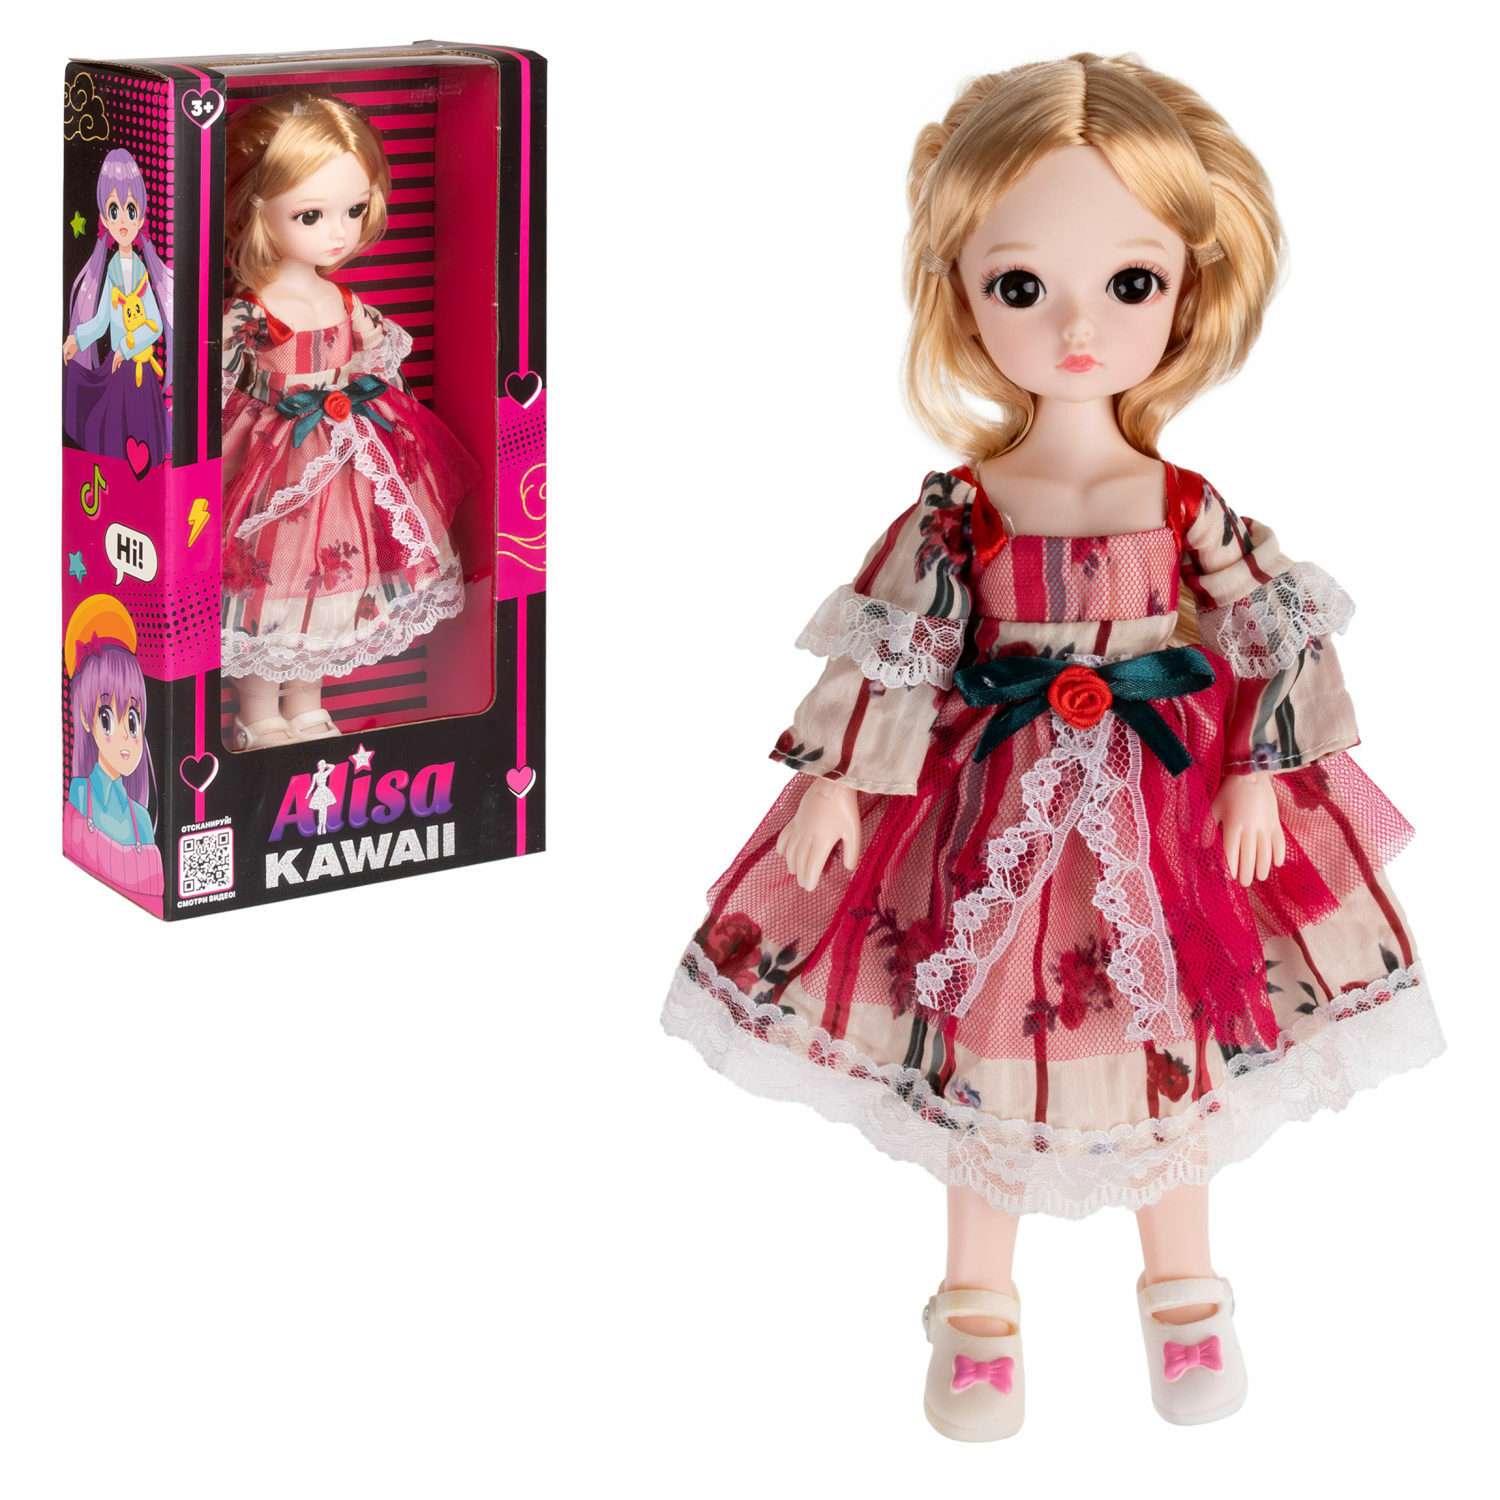 Кукла шарнирная 30 см 1TOY Alisa Kawaii с длинными волосами блондинка БЖД bjd аниме экшн фигурка игрушки для девочек Т24342 - фото 2